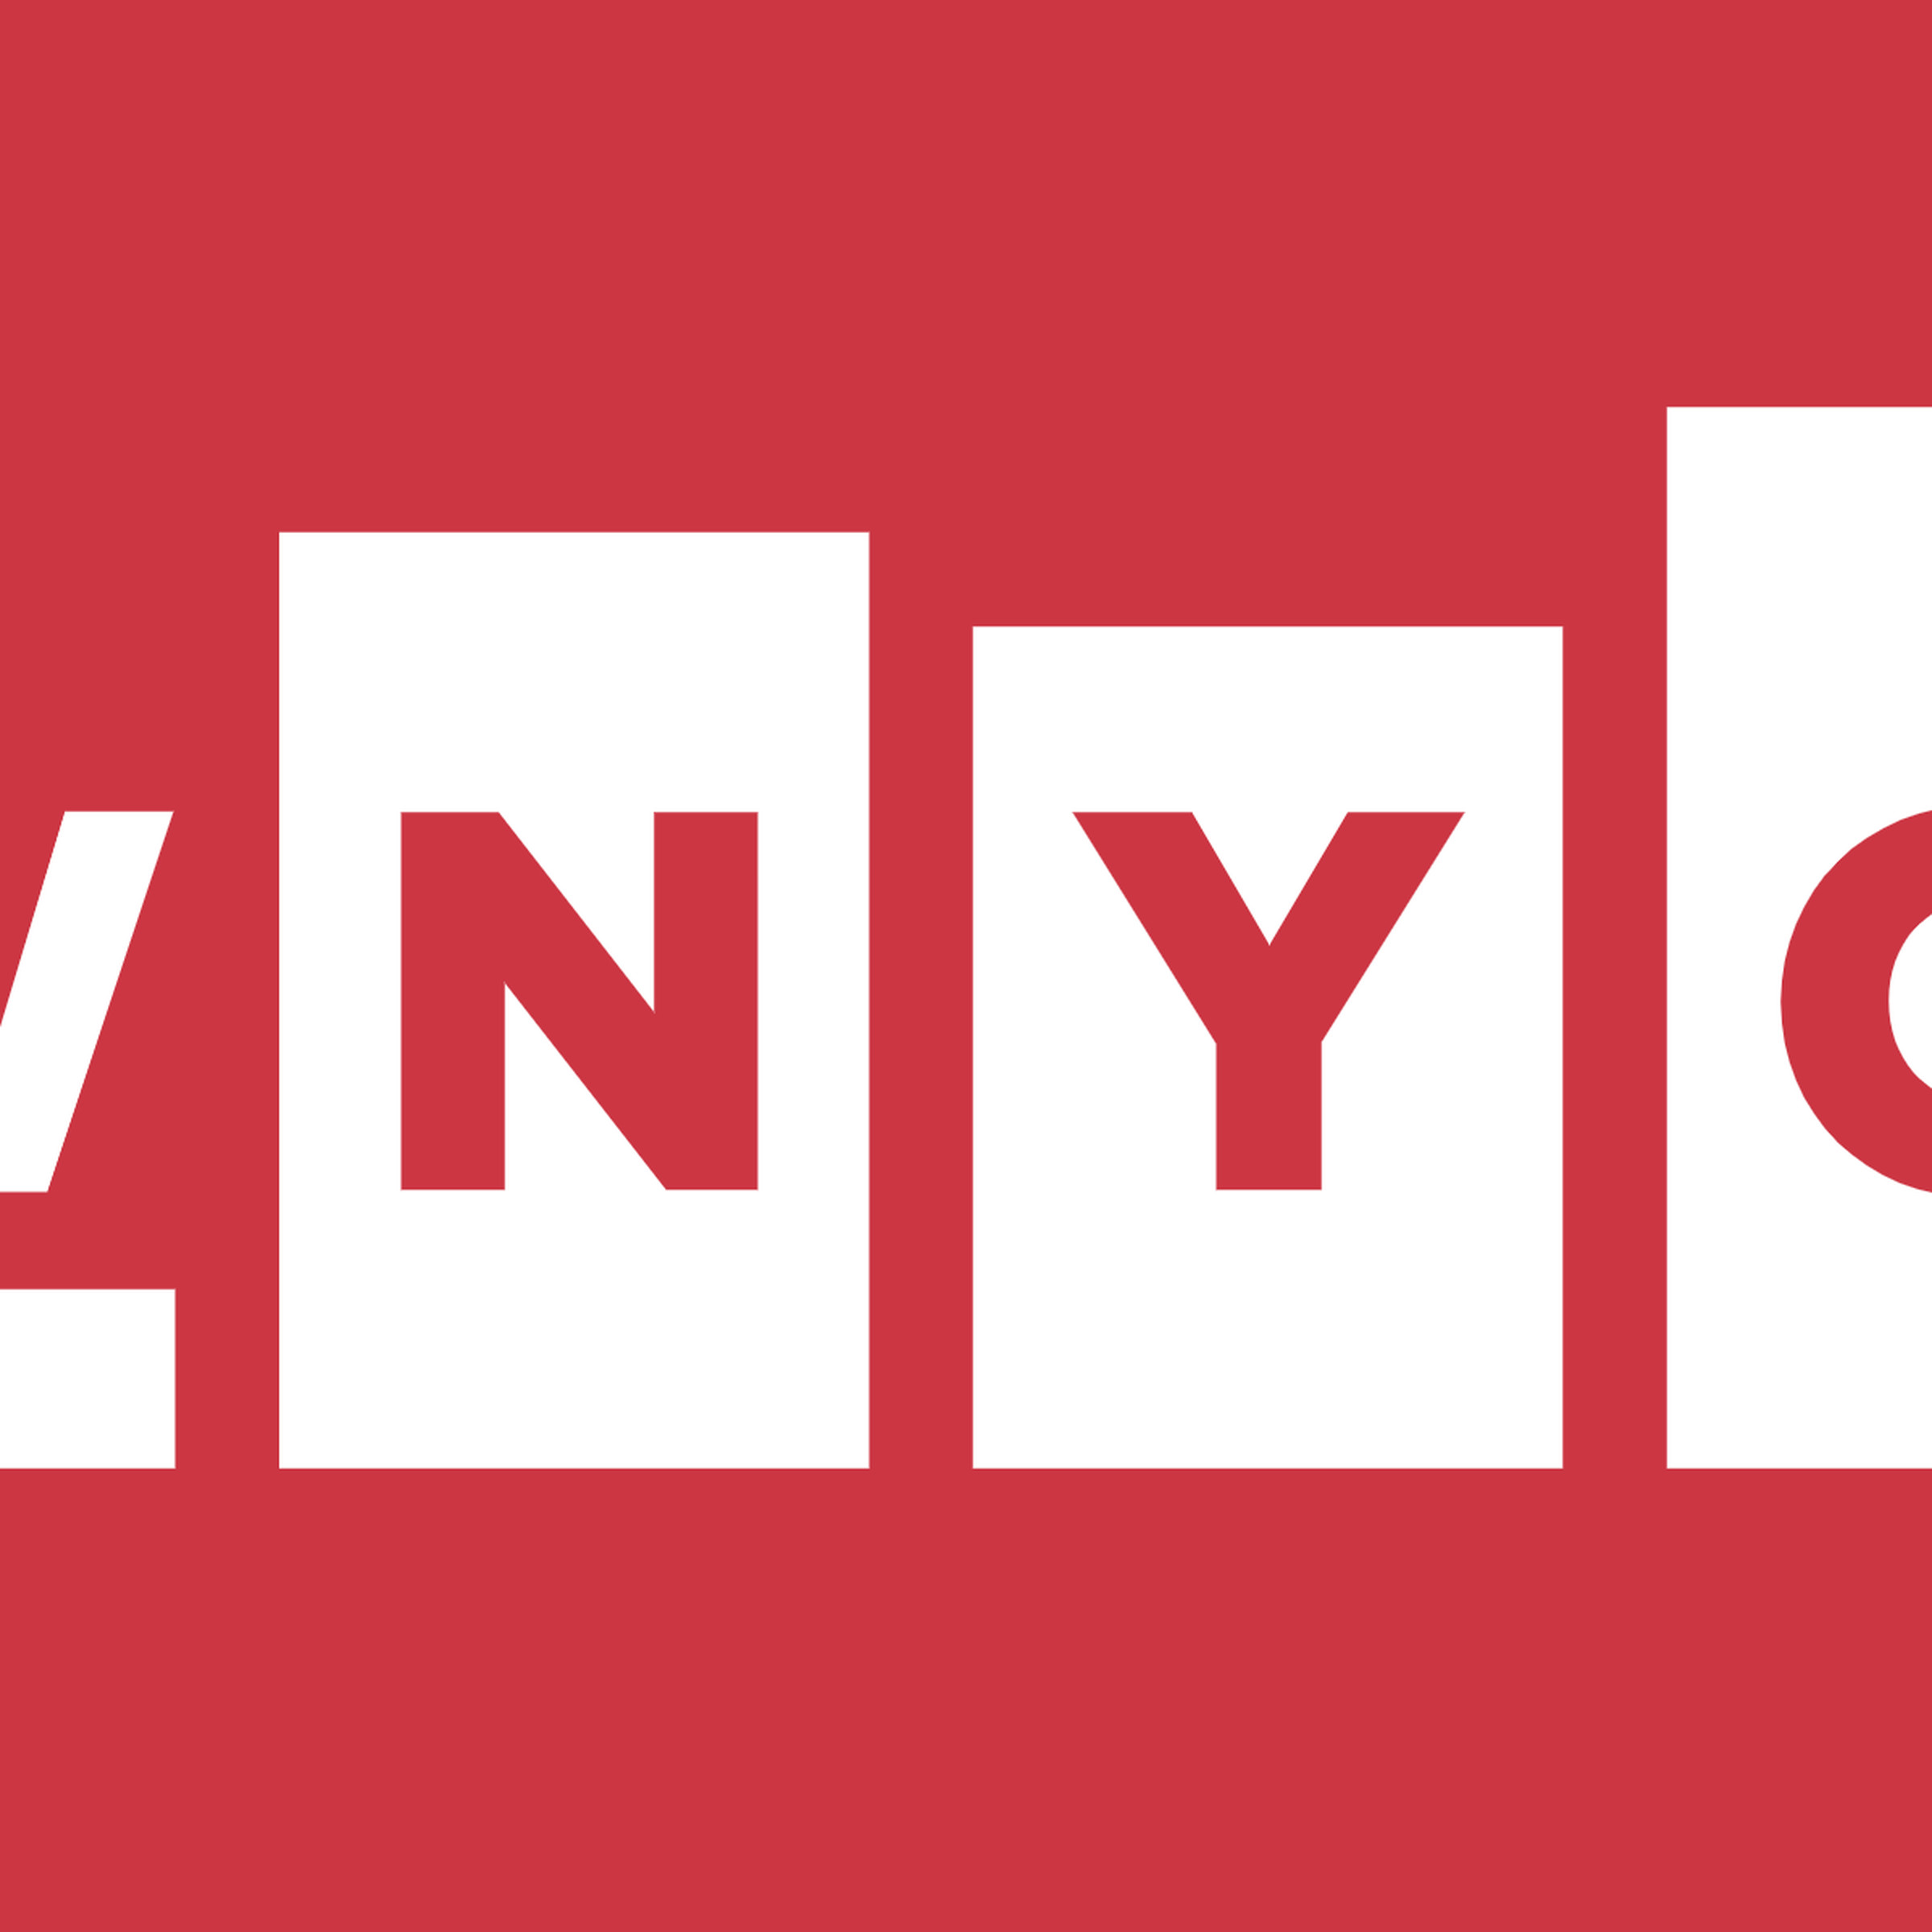 The WNYC logo.